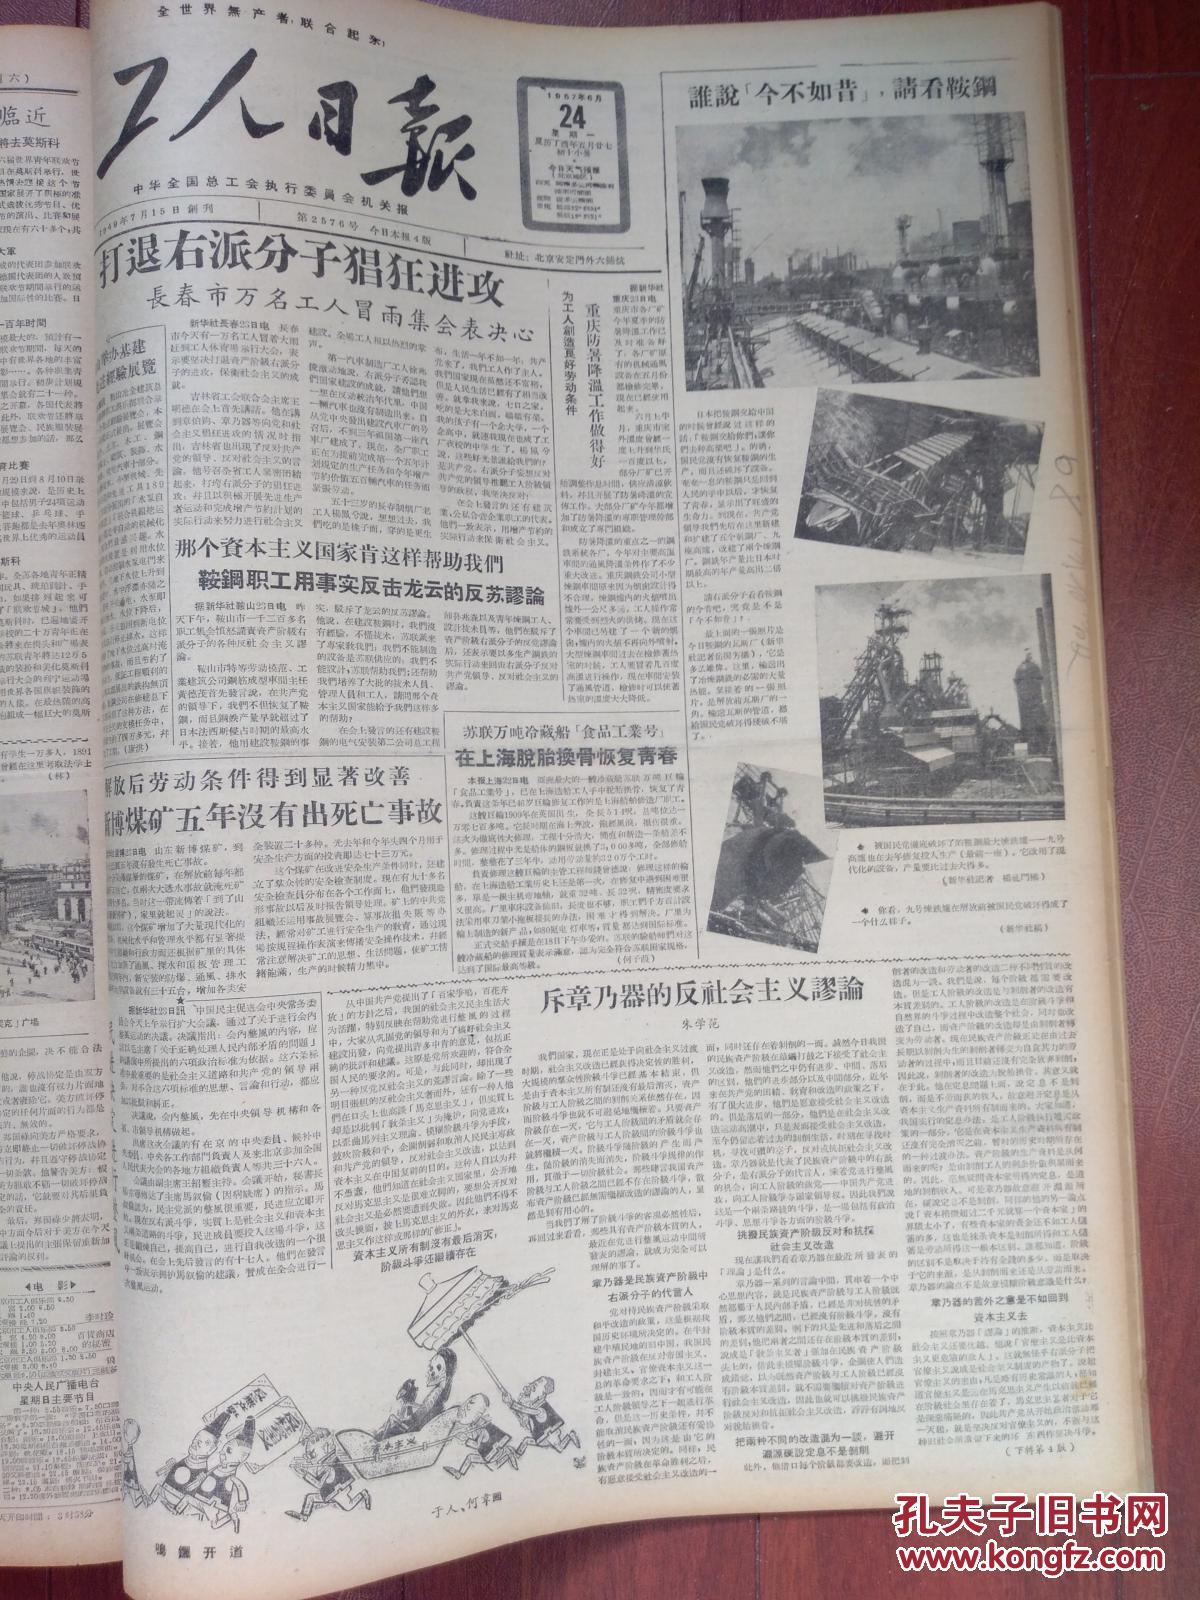 工人日报1957年6月24日(反右运动)民进决定整